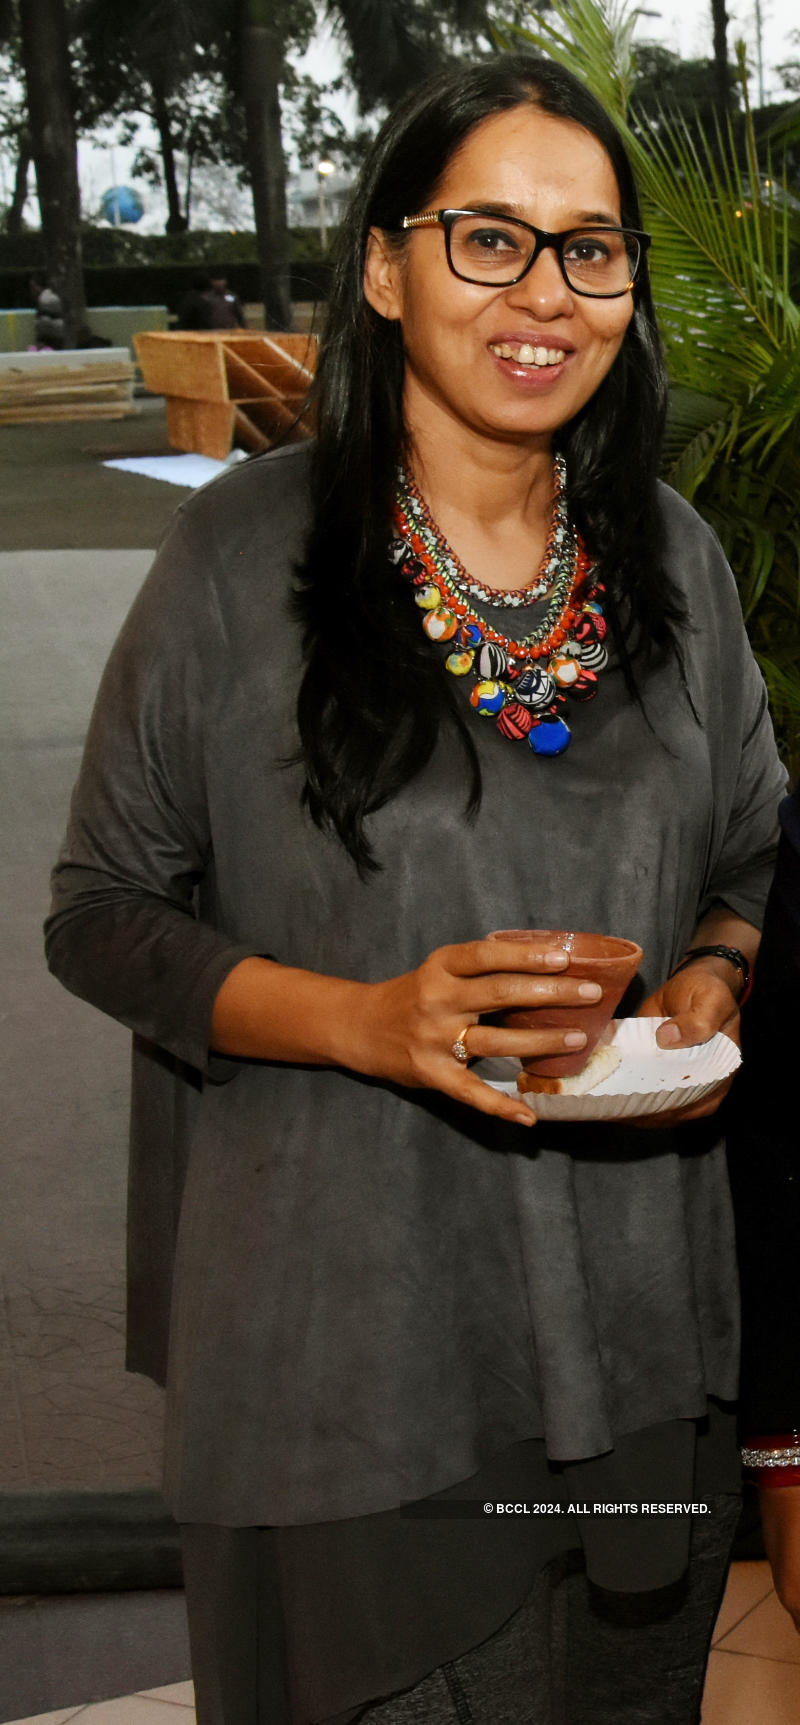 Padma Bhushan Teejan Bai performs at Sur Aur Saaz